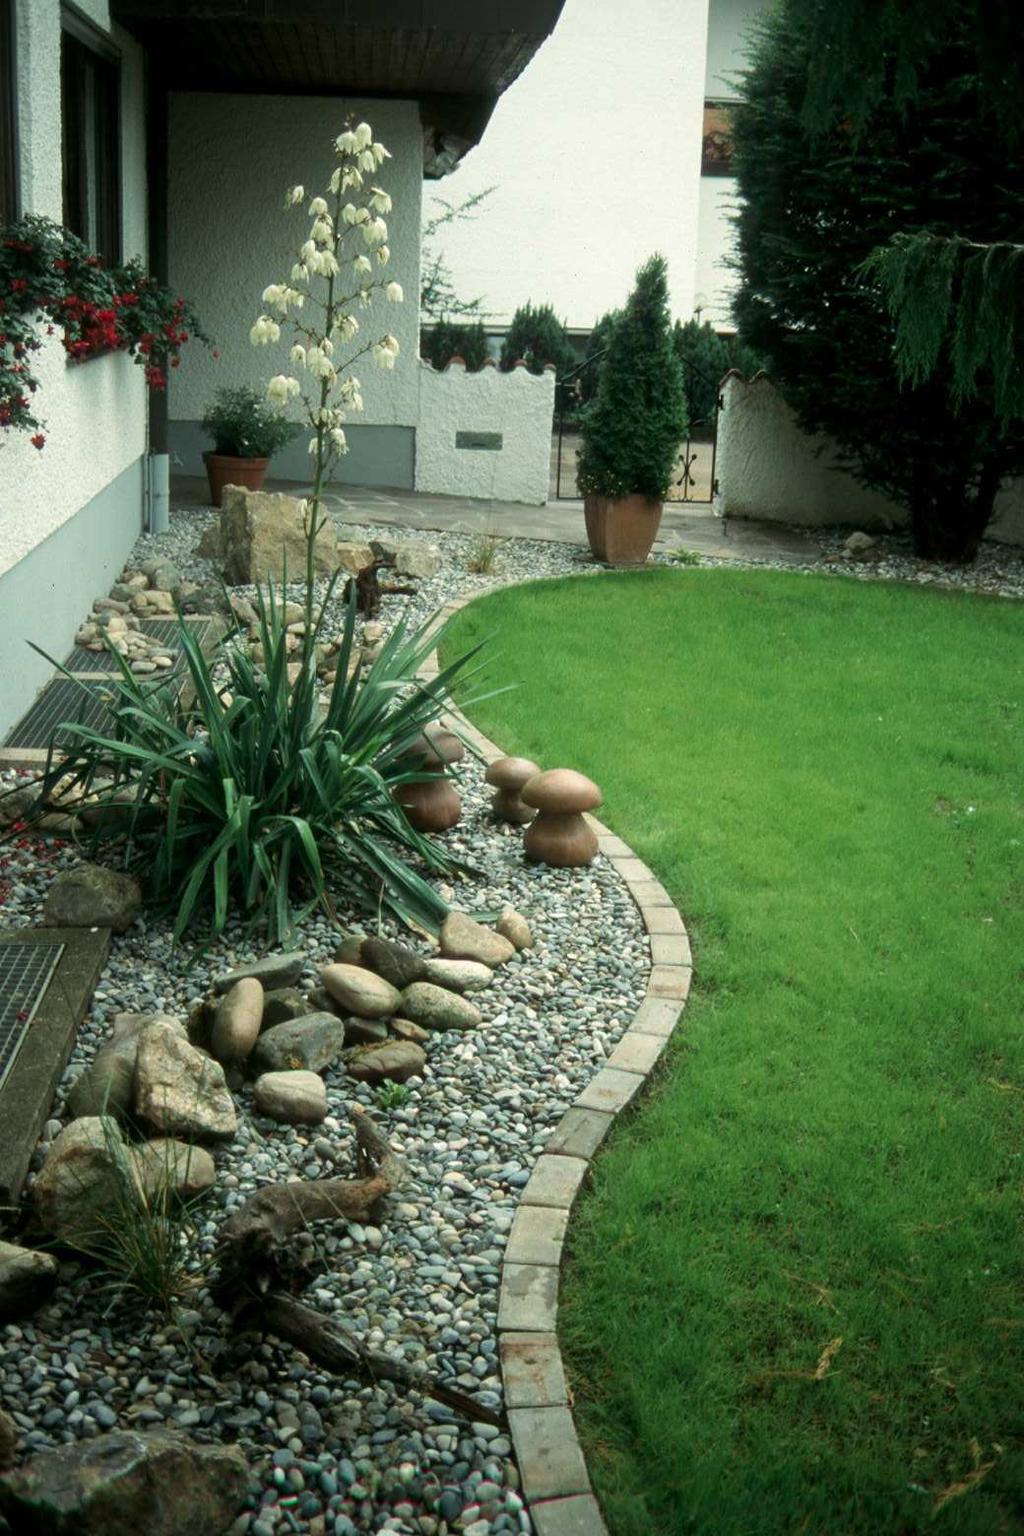 Ein langweiliger Kiesstreifen am Haus wird umgestaltet Es entsteht ein ansprechender, pflegeleichter Vorgarten entlang der Mauer